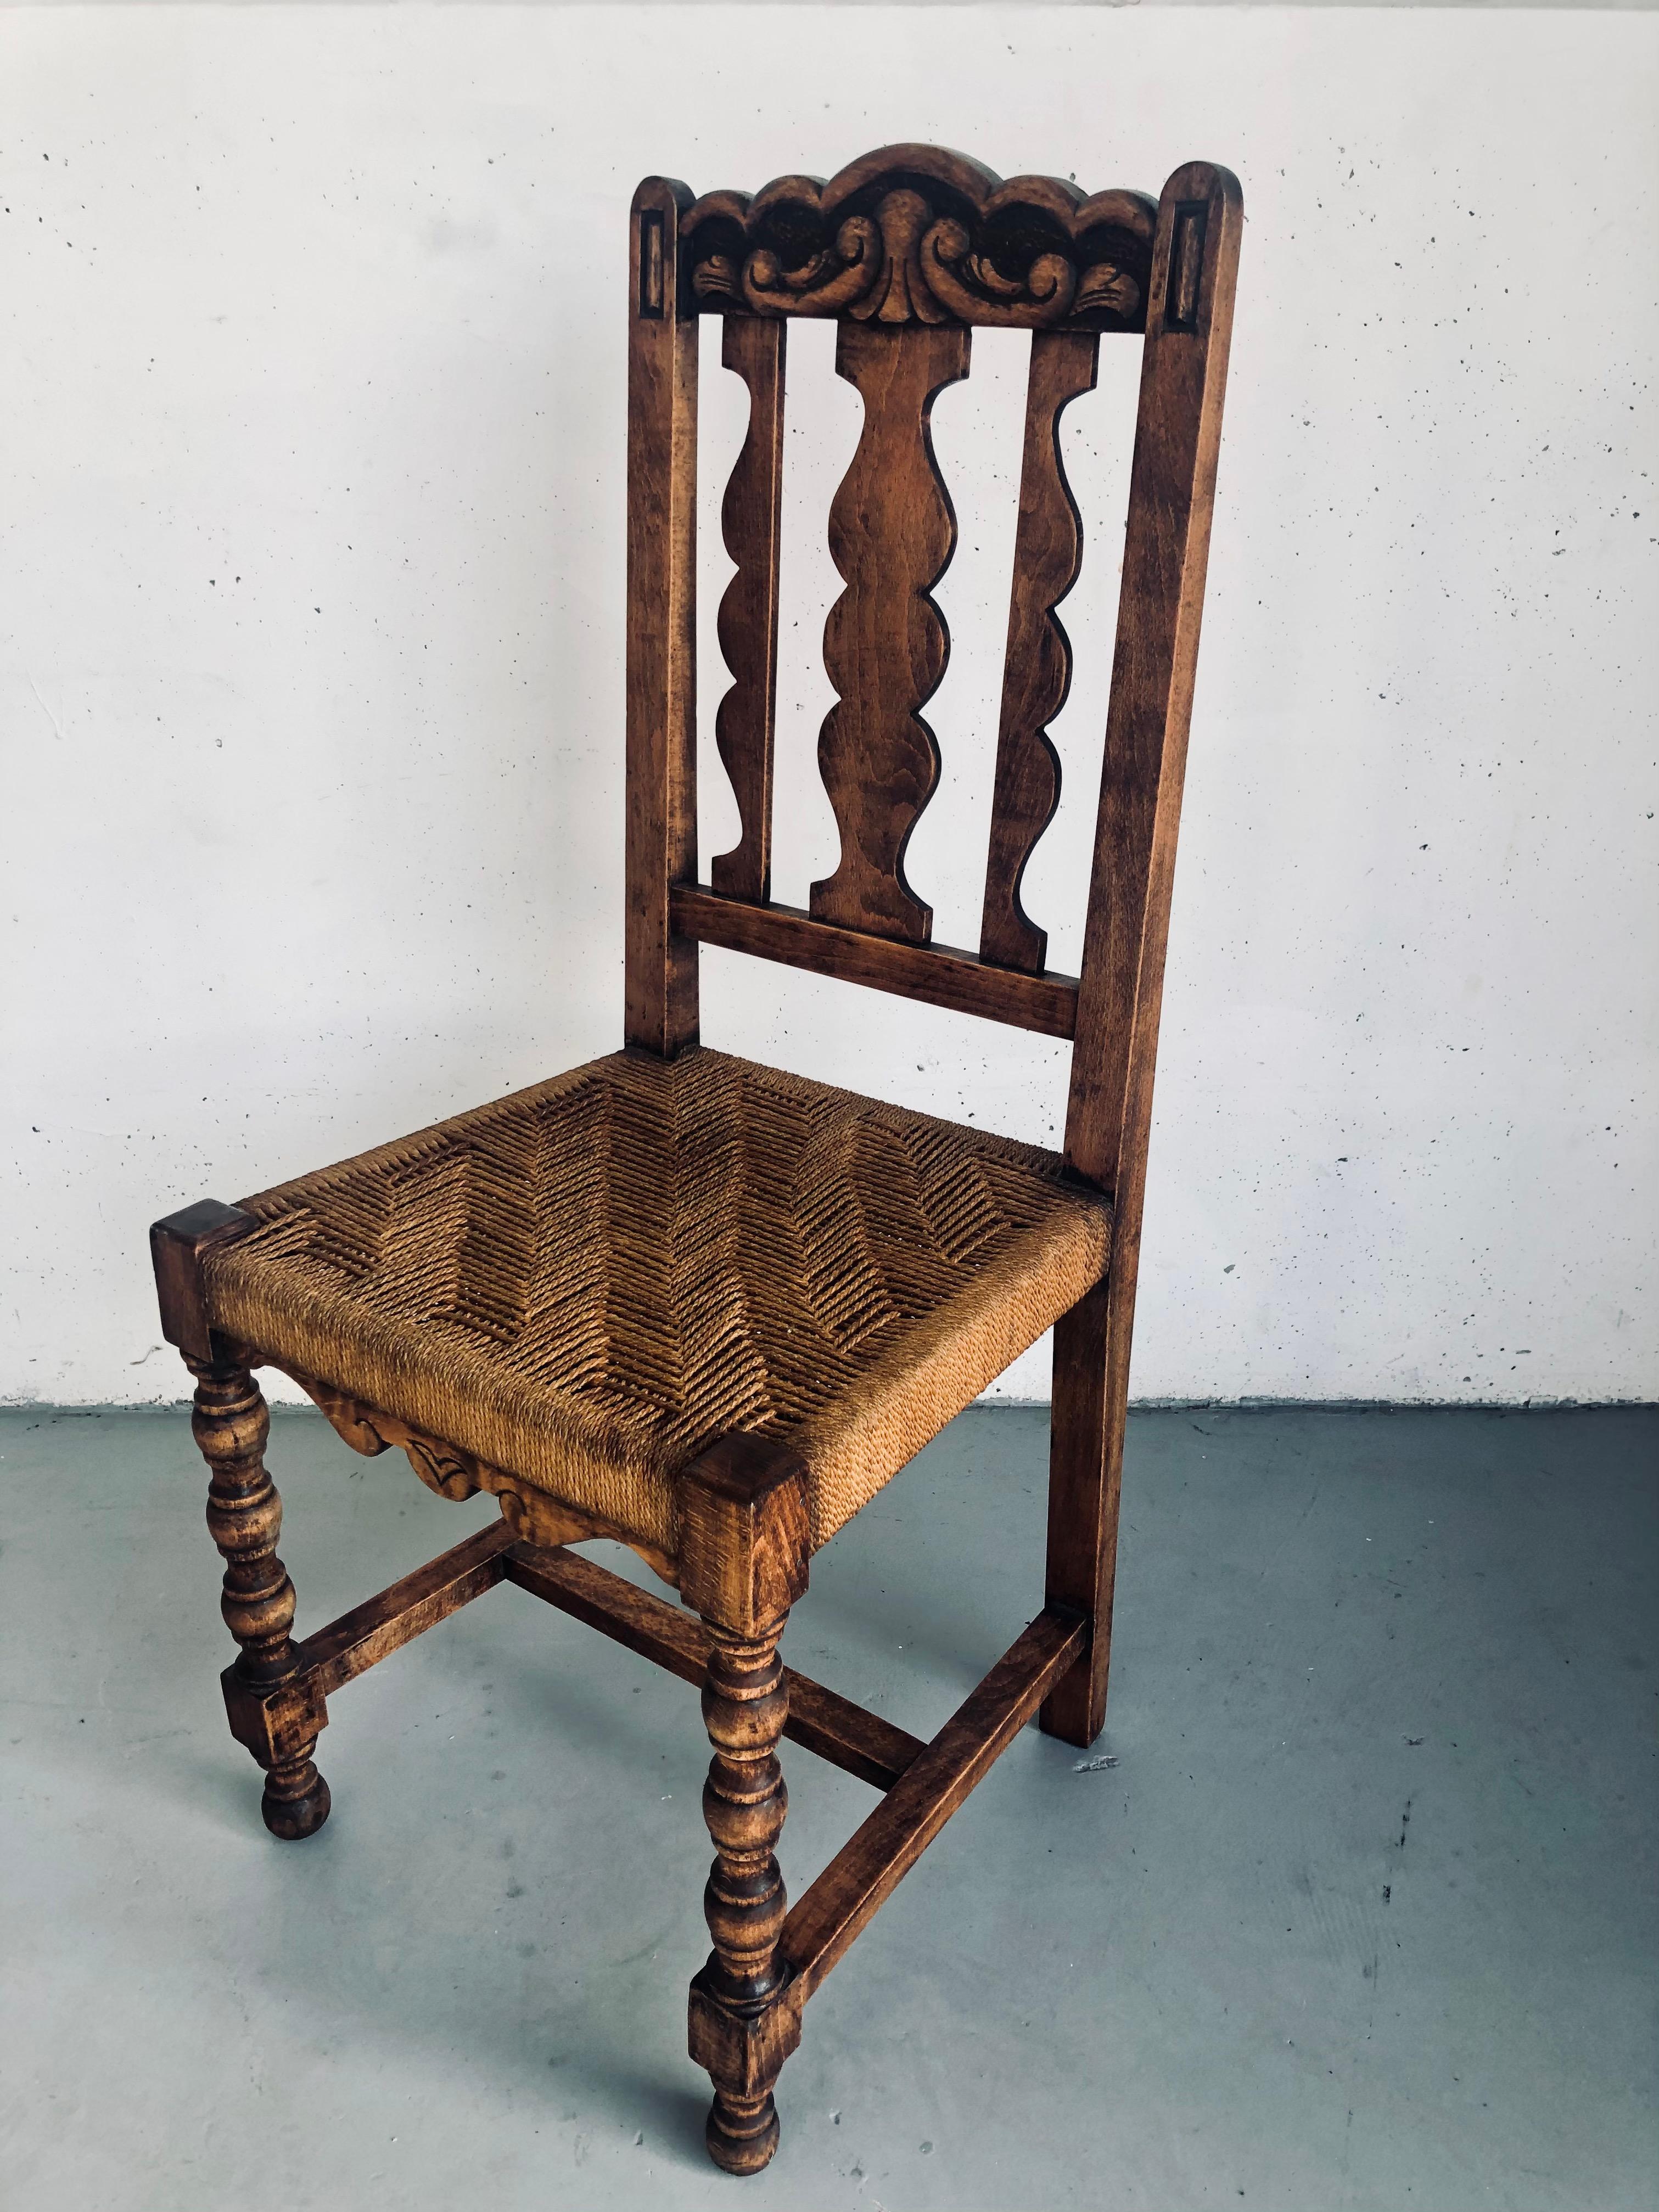 Vintage Massivholz, gedrehte Beine und komplizierte geflochtene Seil Sitz Stuhl, seltene spanische hölzerne kastilischen Stil Stuhl, Pristine Zustand, muss ich sagen, dass es noch schöner in Person ist, ist es eine wirklich atemberaubende,